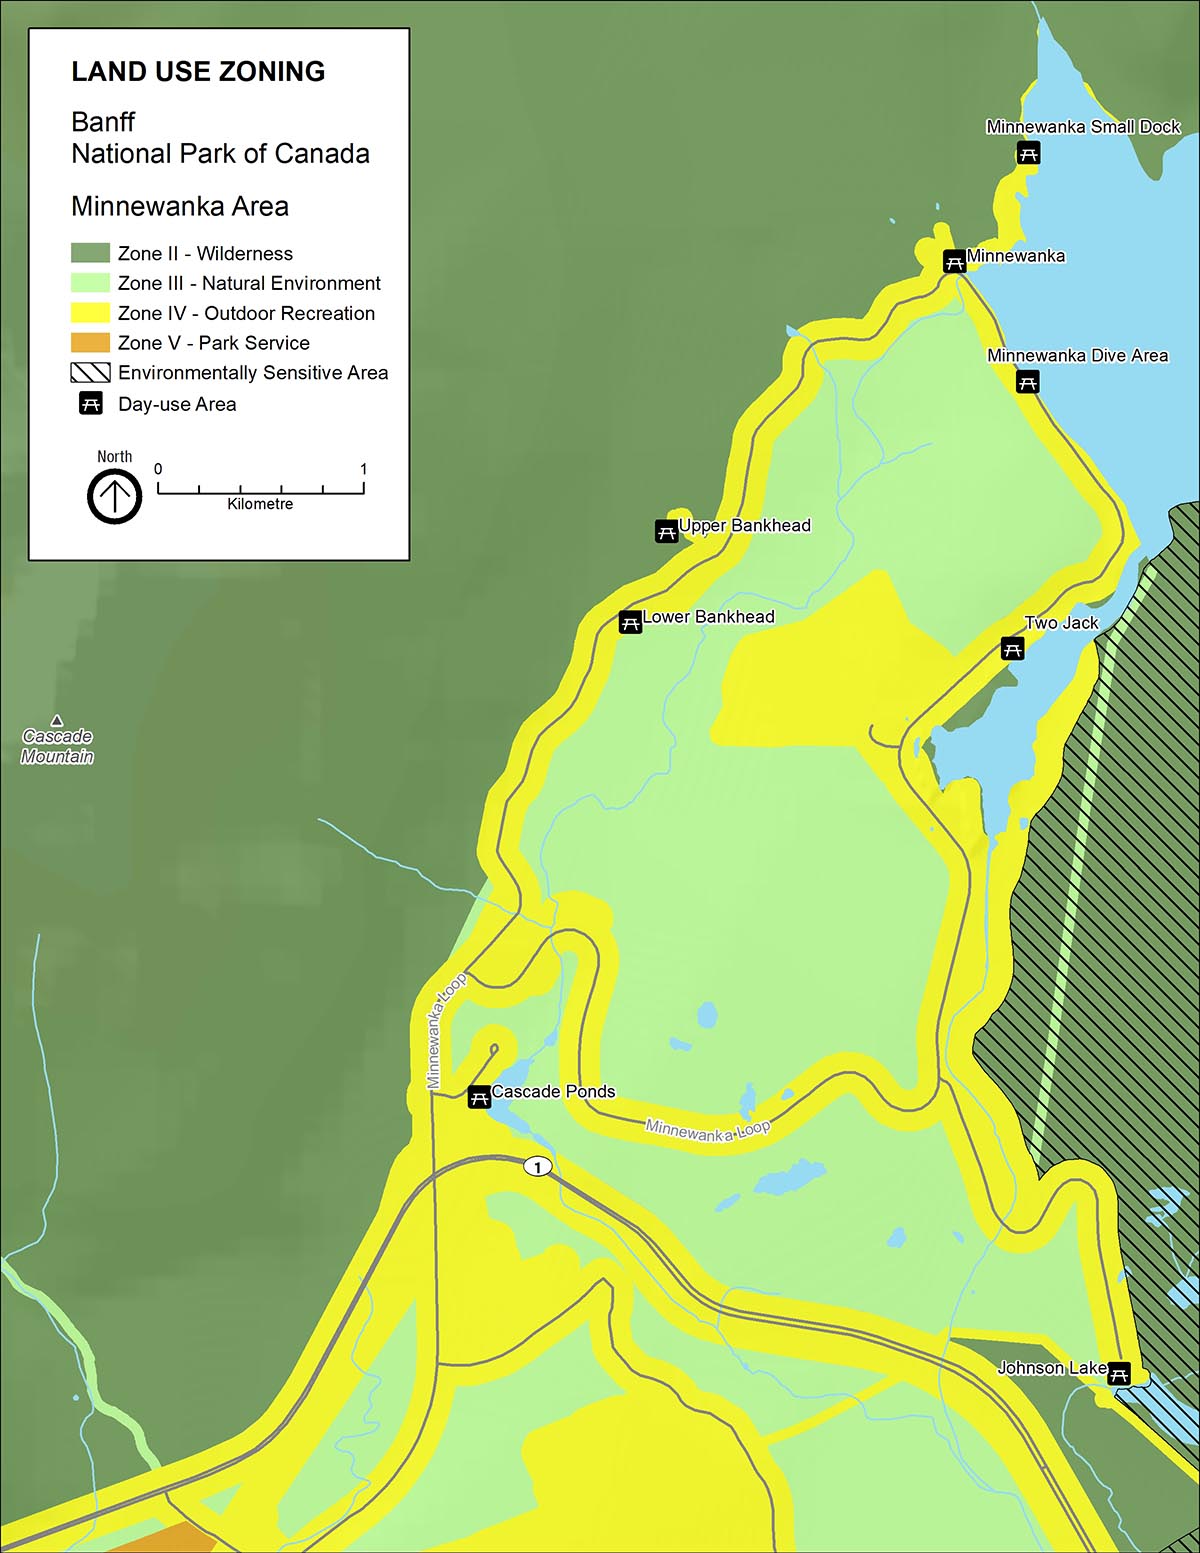  Map 7: Zoning in the Lake Minnewanka Reservoir area